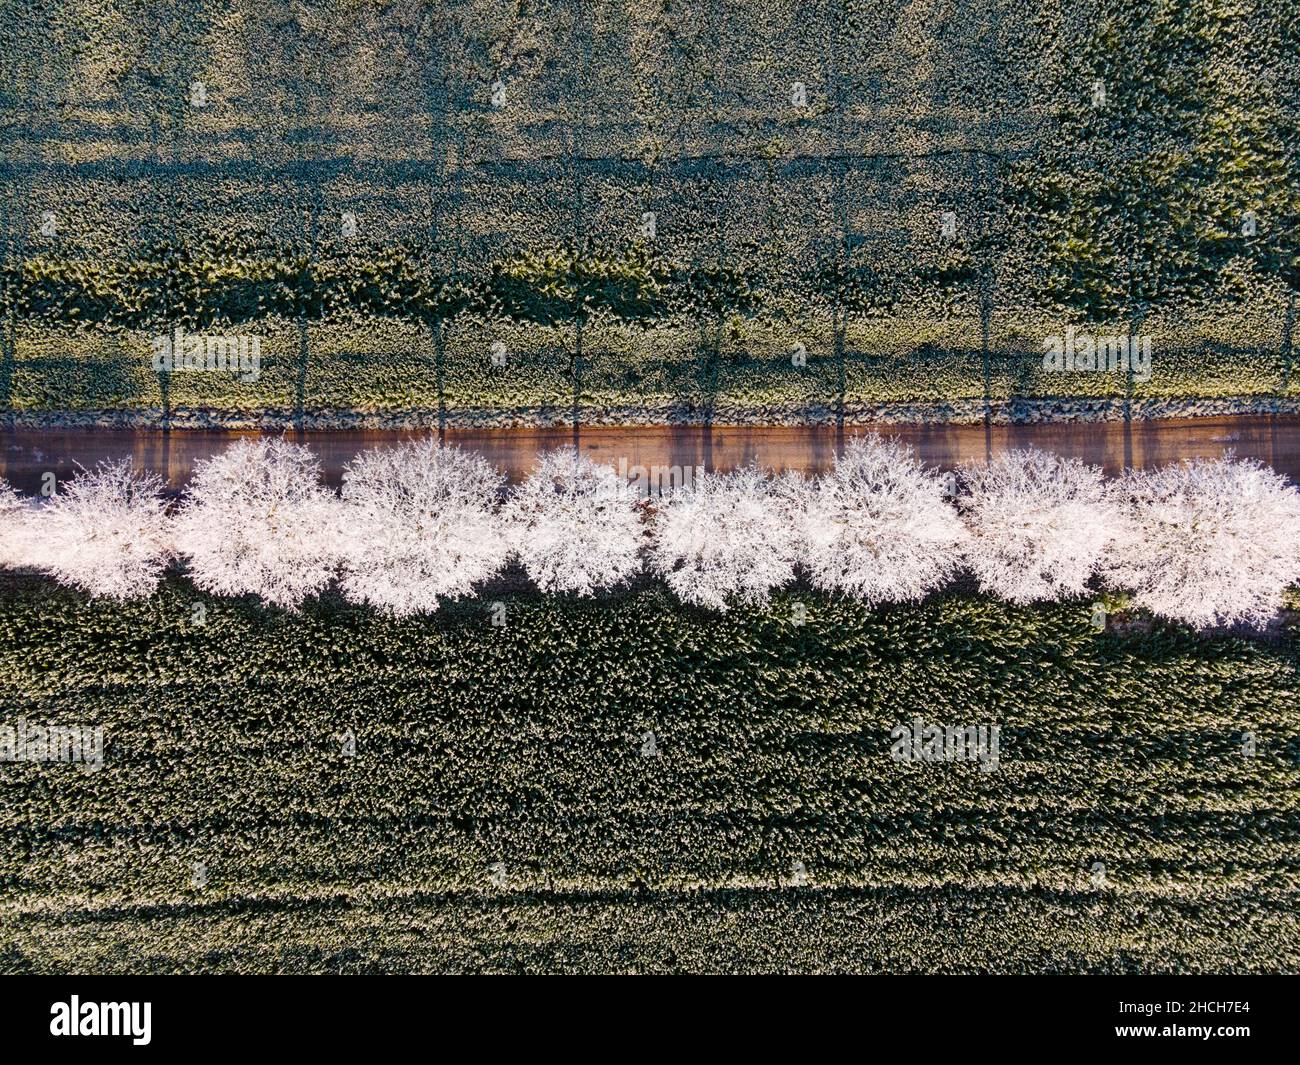 Tir de drone, arbres avec du givre, Berkum, district de peine, Basse-Saxe,Allemagne Banque D'Images